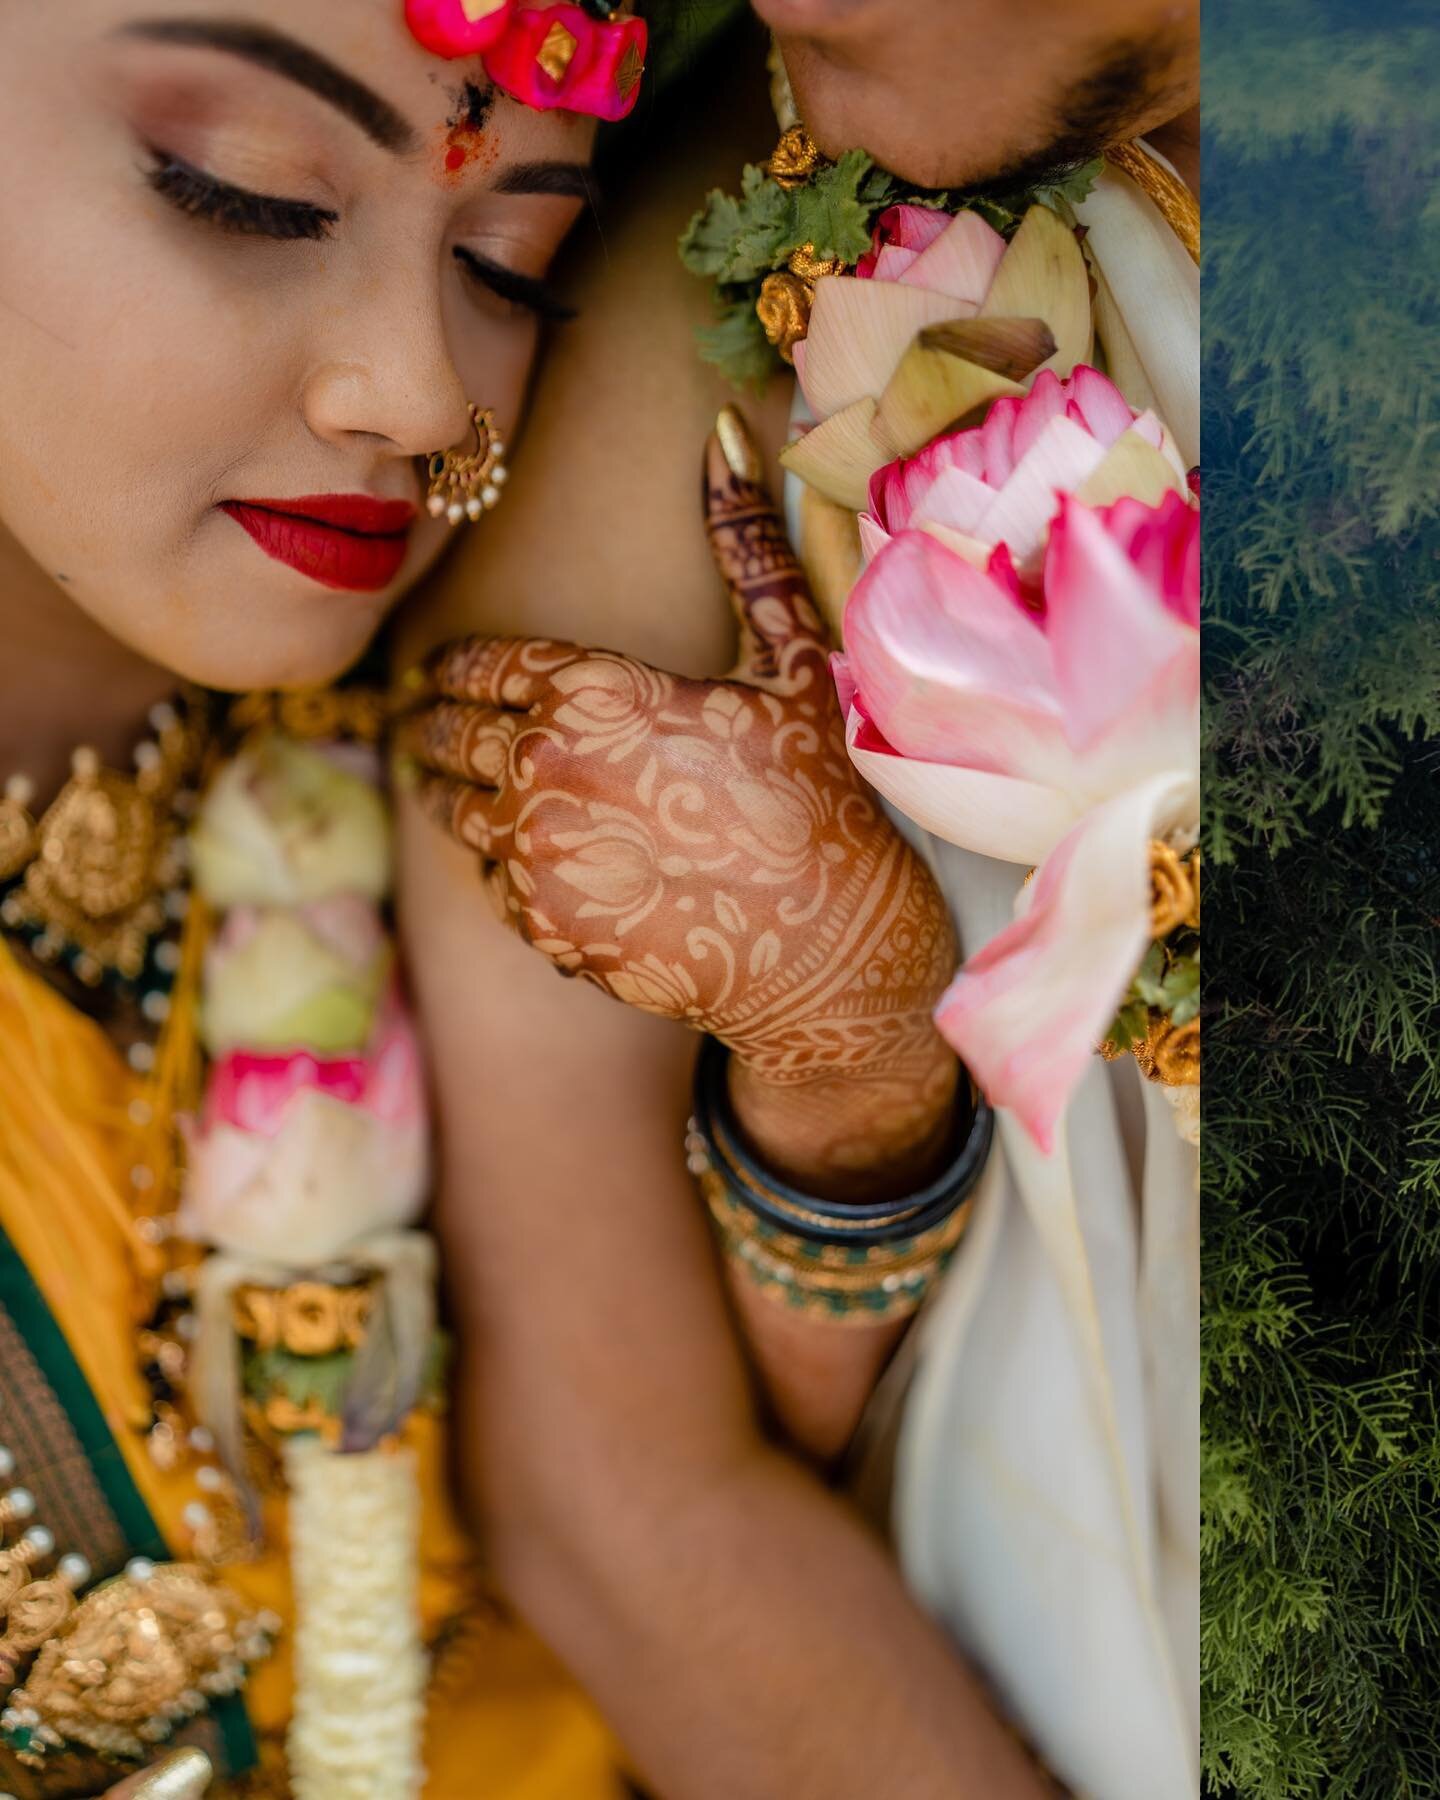 Soulmates are made in Heaven!
.
In frame
Bride: @shwetha_2512 
Groom: Nikhil
.
Capturing emotions by @myshutterclicksphotography 
.
#weddingphotography #bridalshoot #southindianbride #bangalorebride #bangalorephotographer #wedmegood